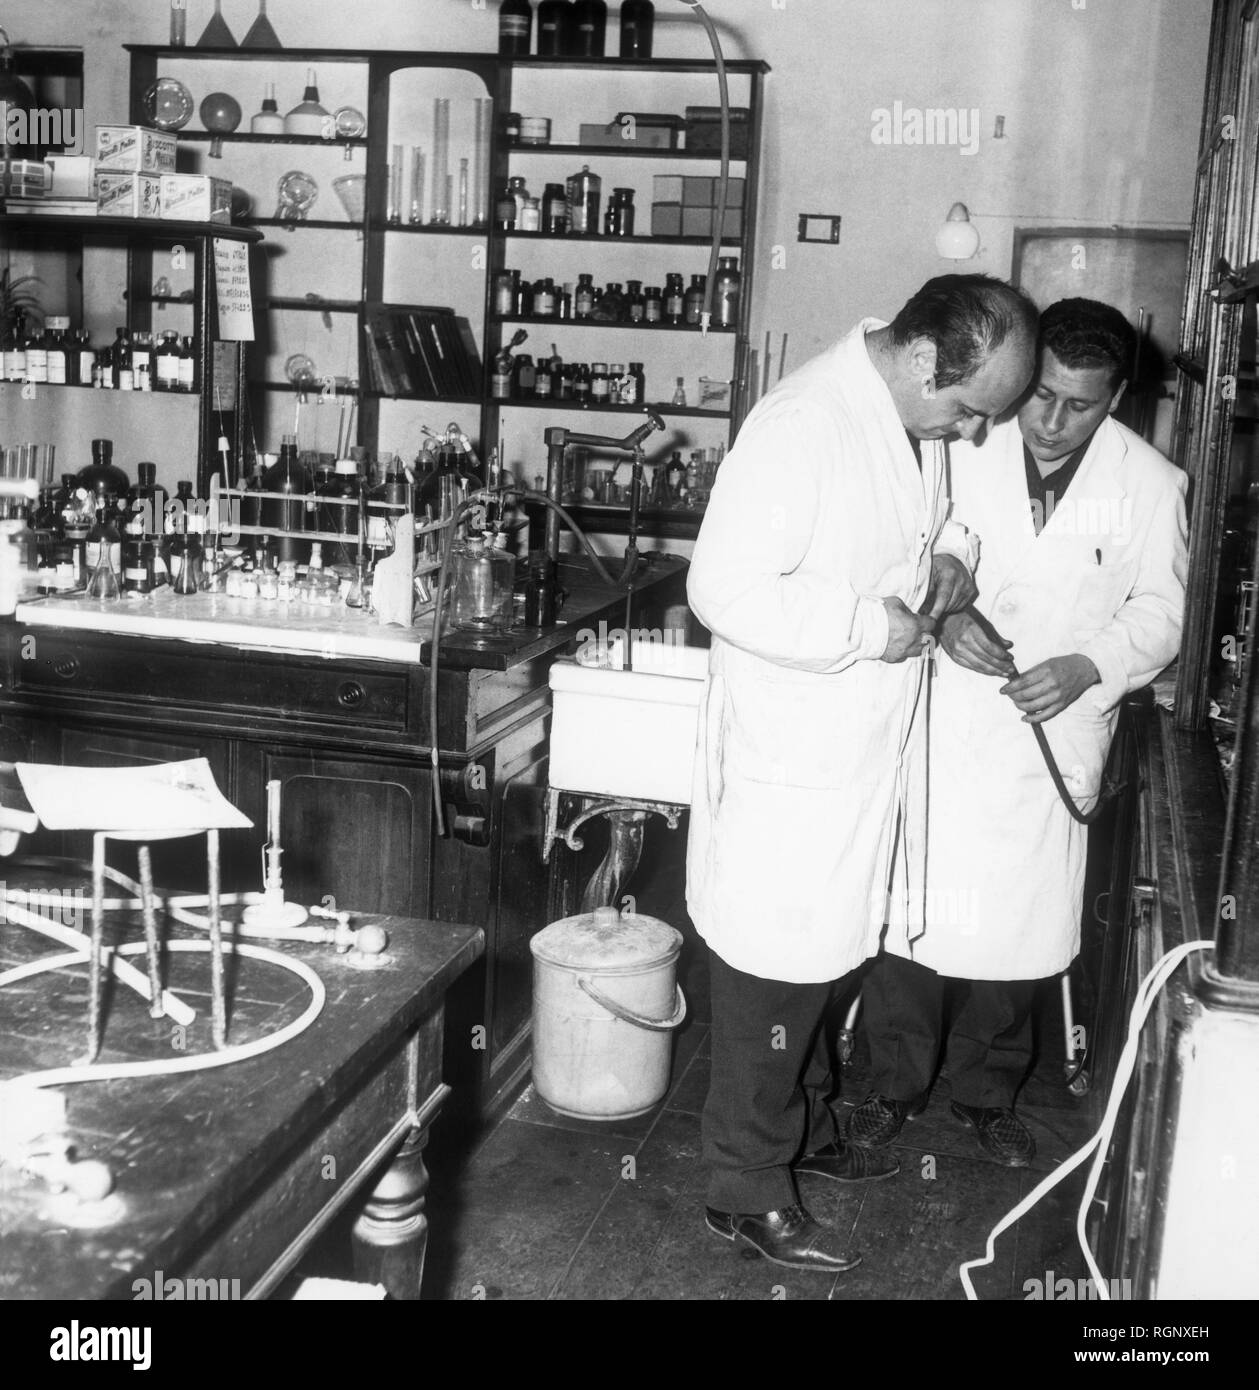 laboratory of pharmacy, university of florence, tuscany, italy, 1964 Stock Photo